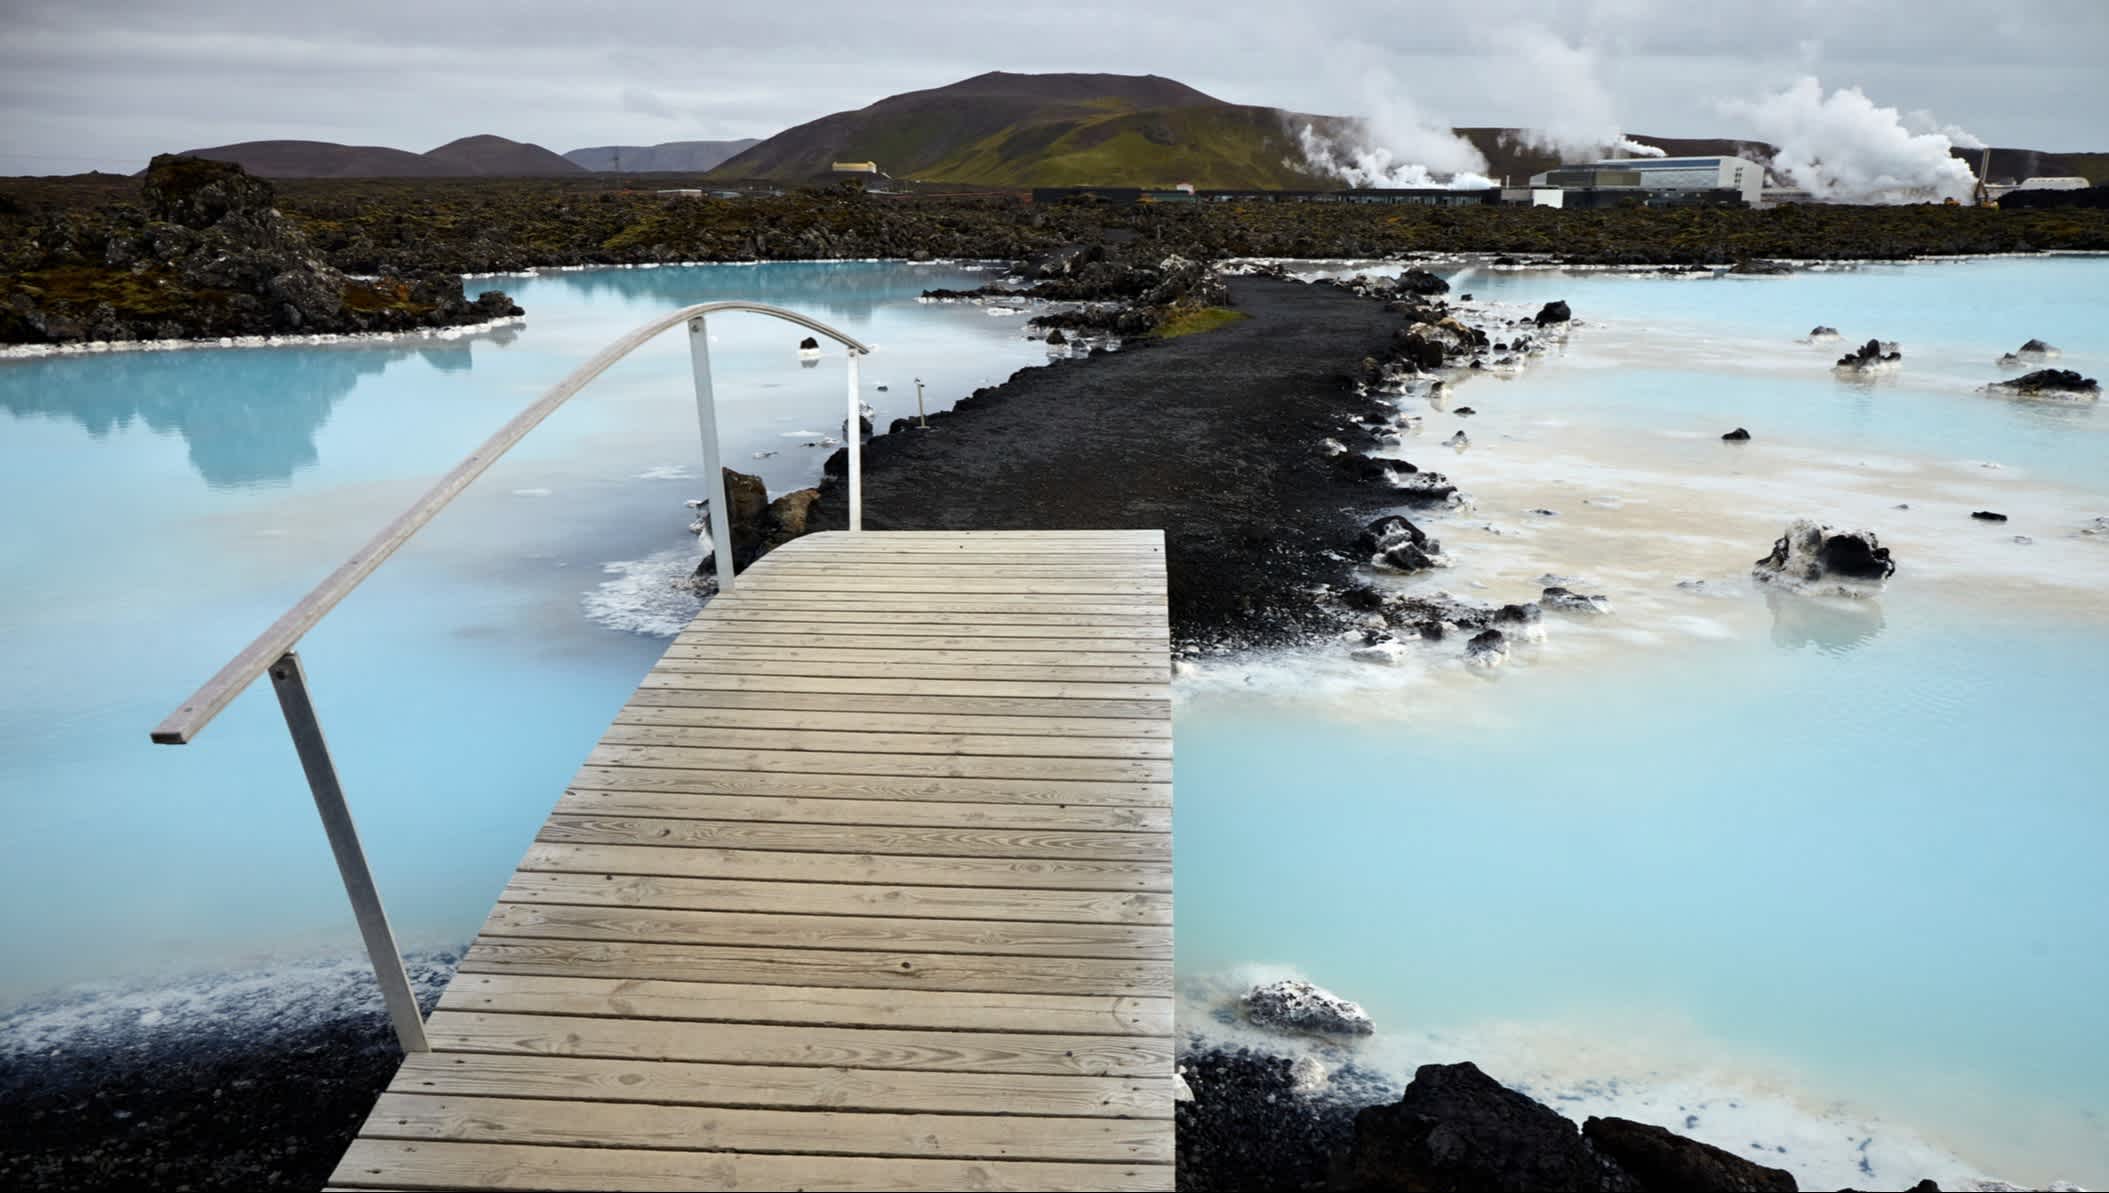 Holzbrücke an der Blauen Lagune mit felsiger und vulkanischer Landschaft in Island